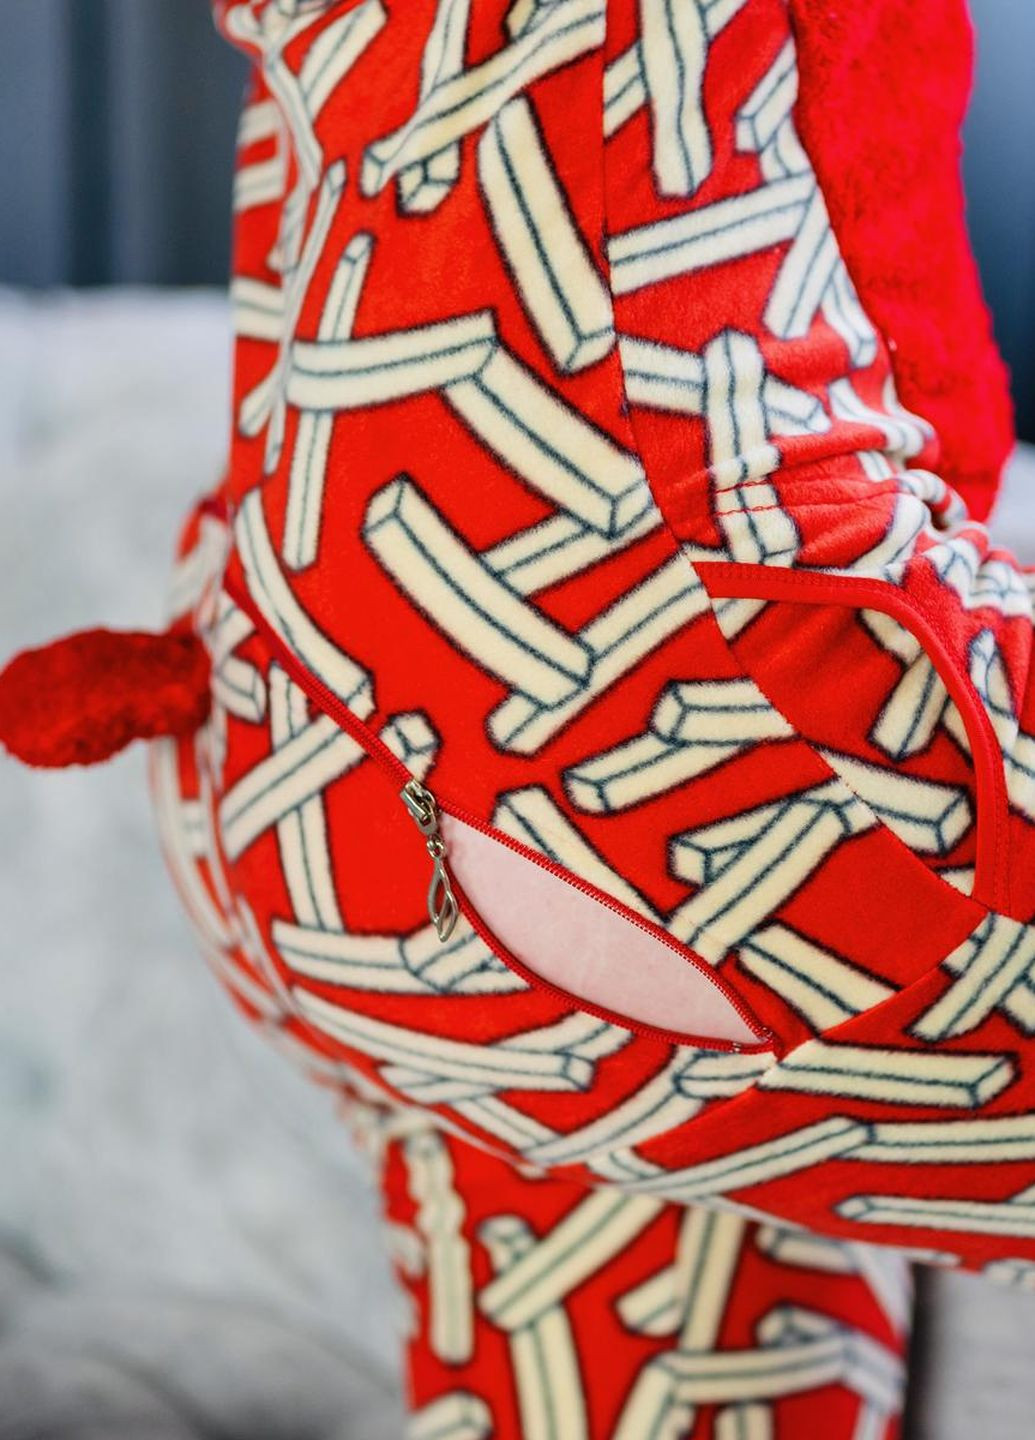 Красная зимняя пижама комбинезон Pijamoni Попожама палички (комбінезон з карманом на попі, піджамоні) - кигурумі